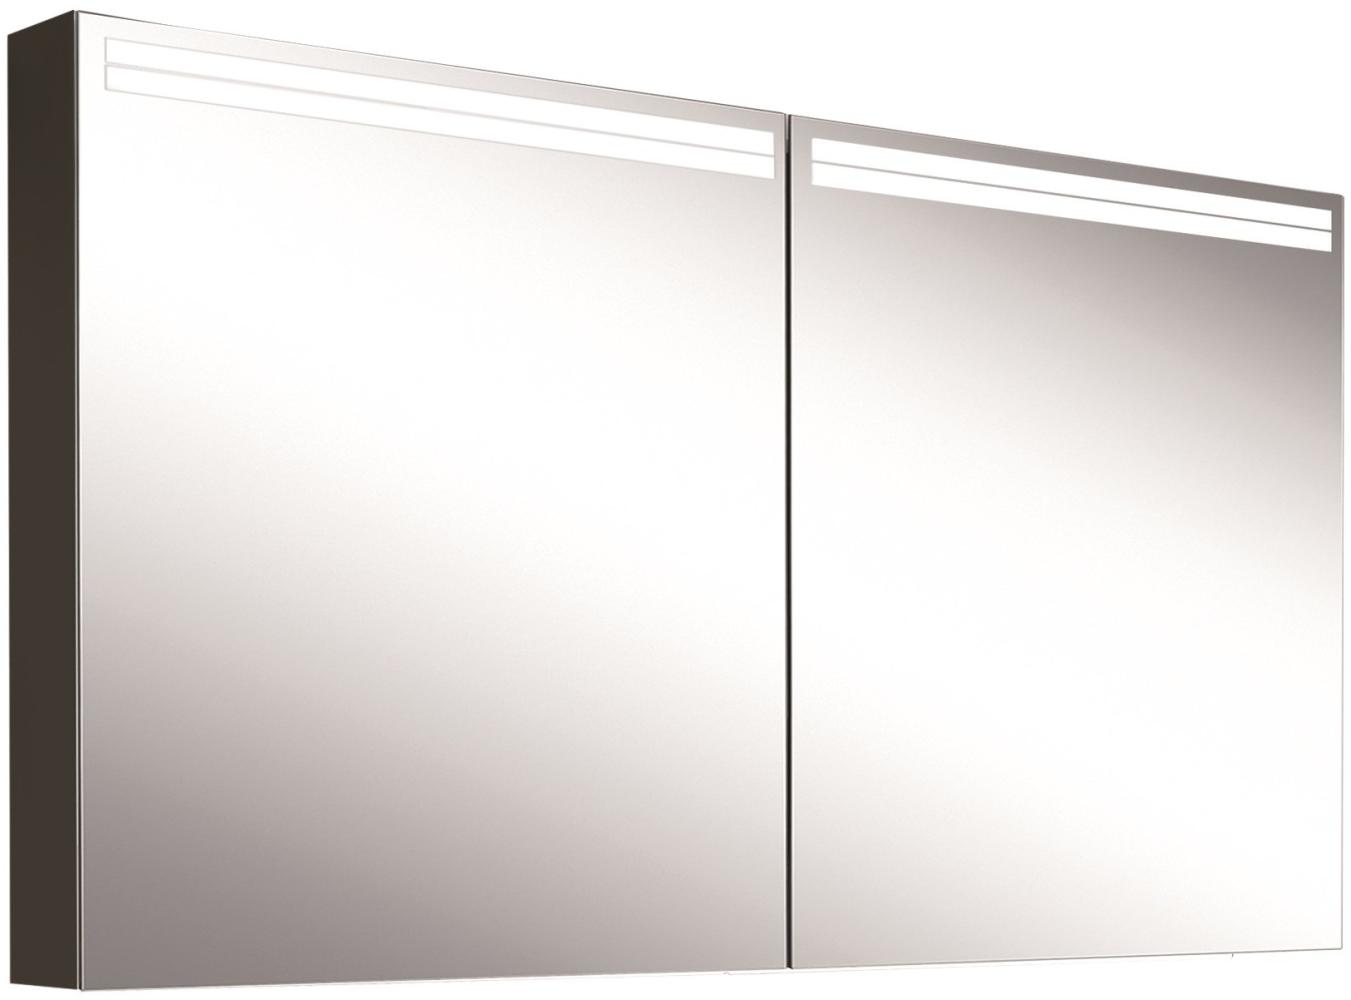 Schneider ARANGALINE LED Lichtspiegelschrank, 2 Doppelspiegeltüren, 140x70x12cm, 160. 540. 02. 41, Ausführung: EU-Norm/Korpus schwarz matt - 160. 540. 02. 41 Bild 1